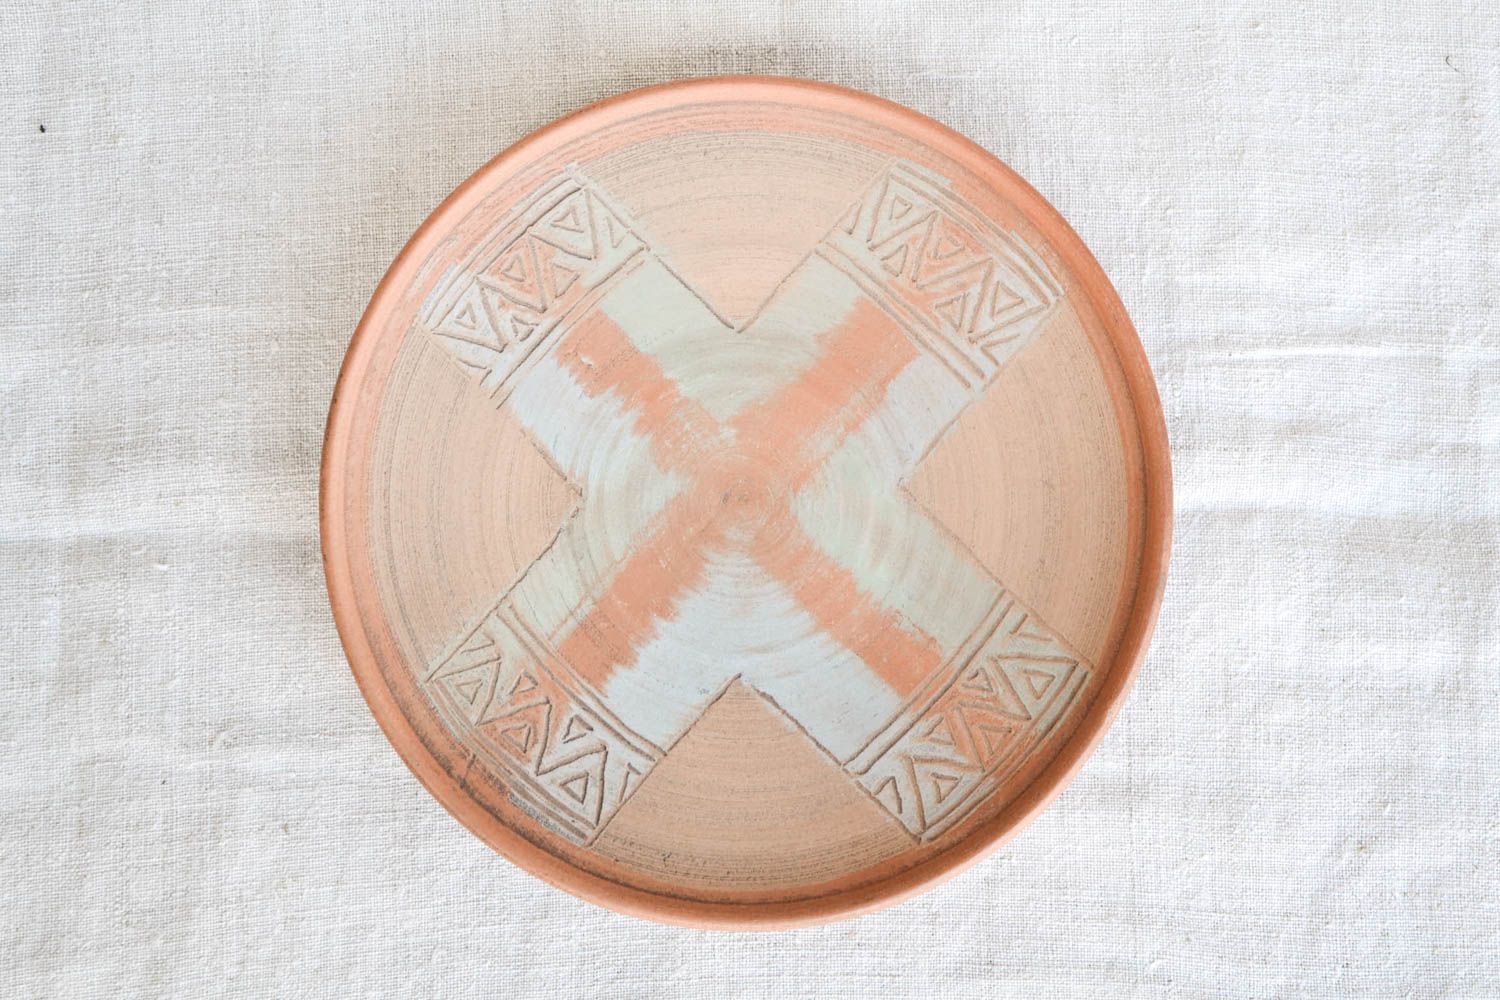 Plato pintado y hecho a mano de barro utensilio de cocina vajilla de diseño foto 3